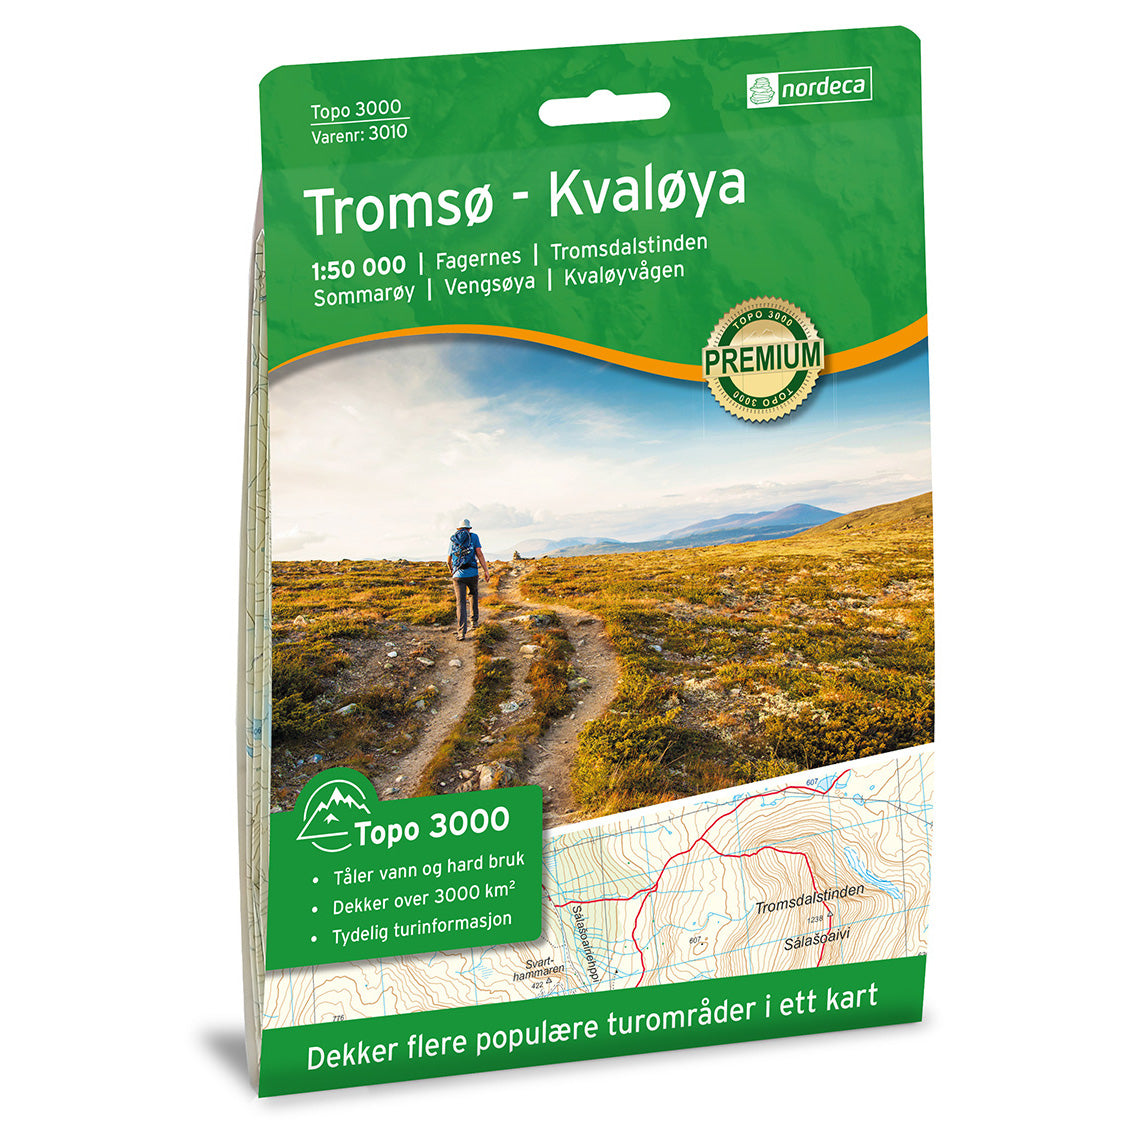 Tromso Map | Nordeca Tromso / Kvaloya Topo 3000 | Backcountry Books